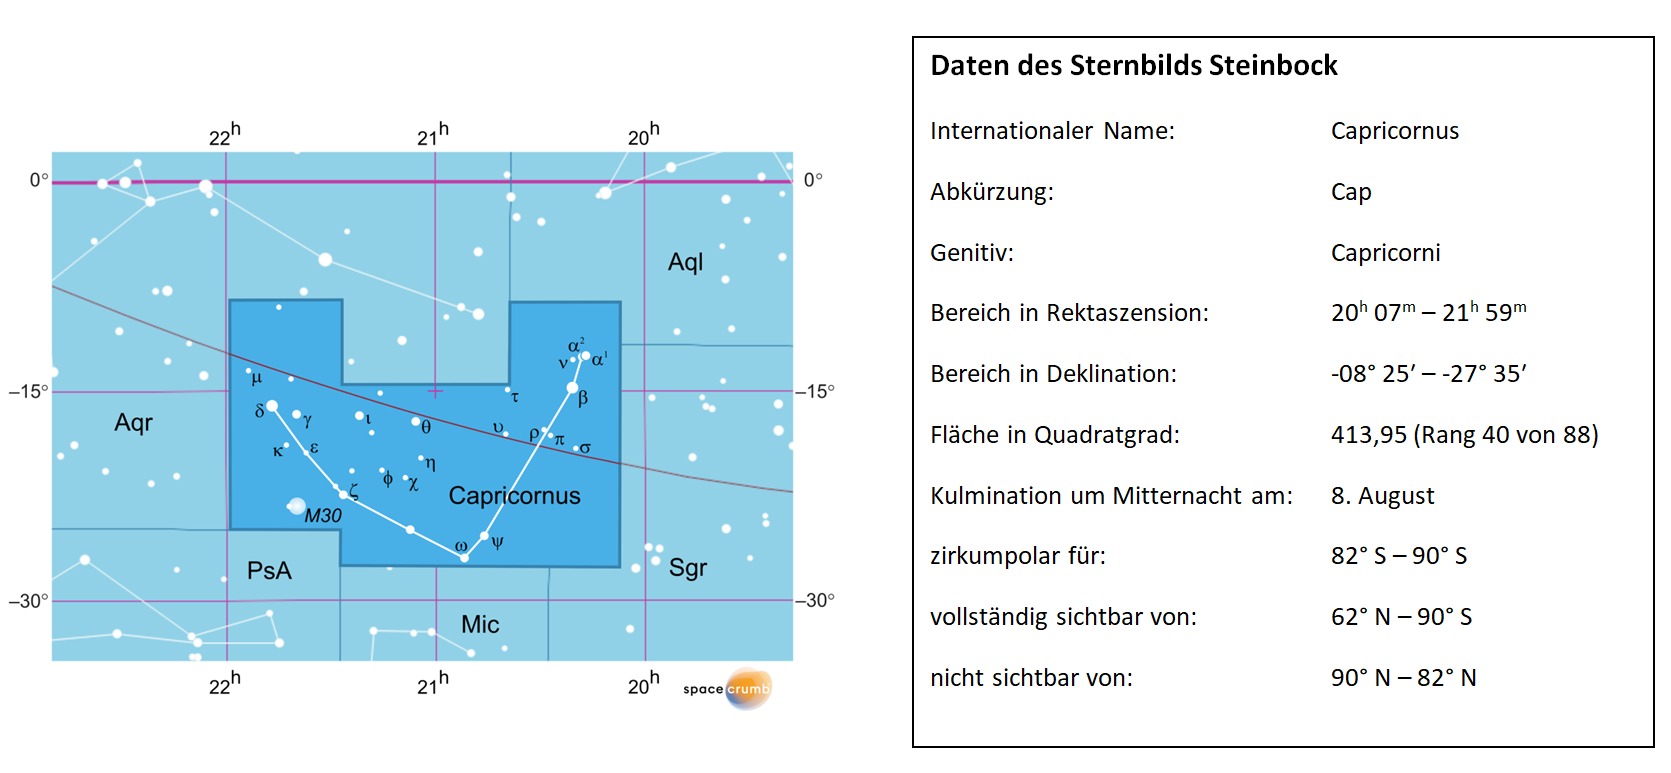 Daten des Sternbilds Steinbock